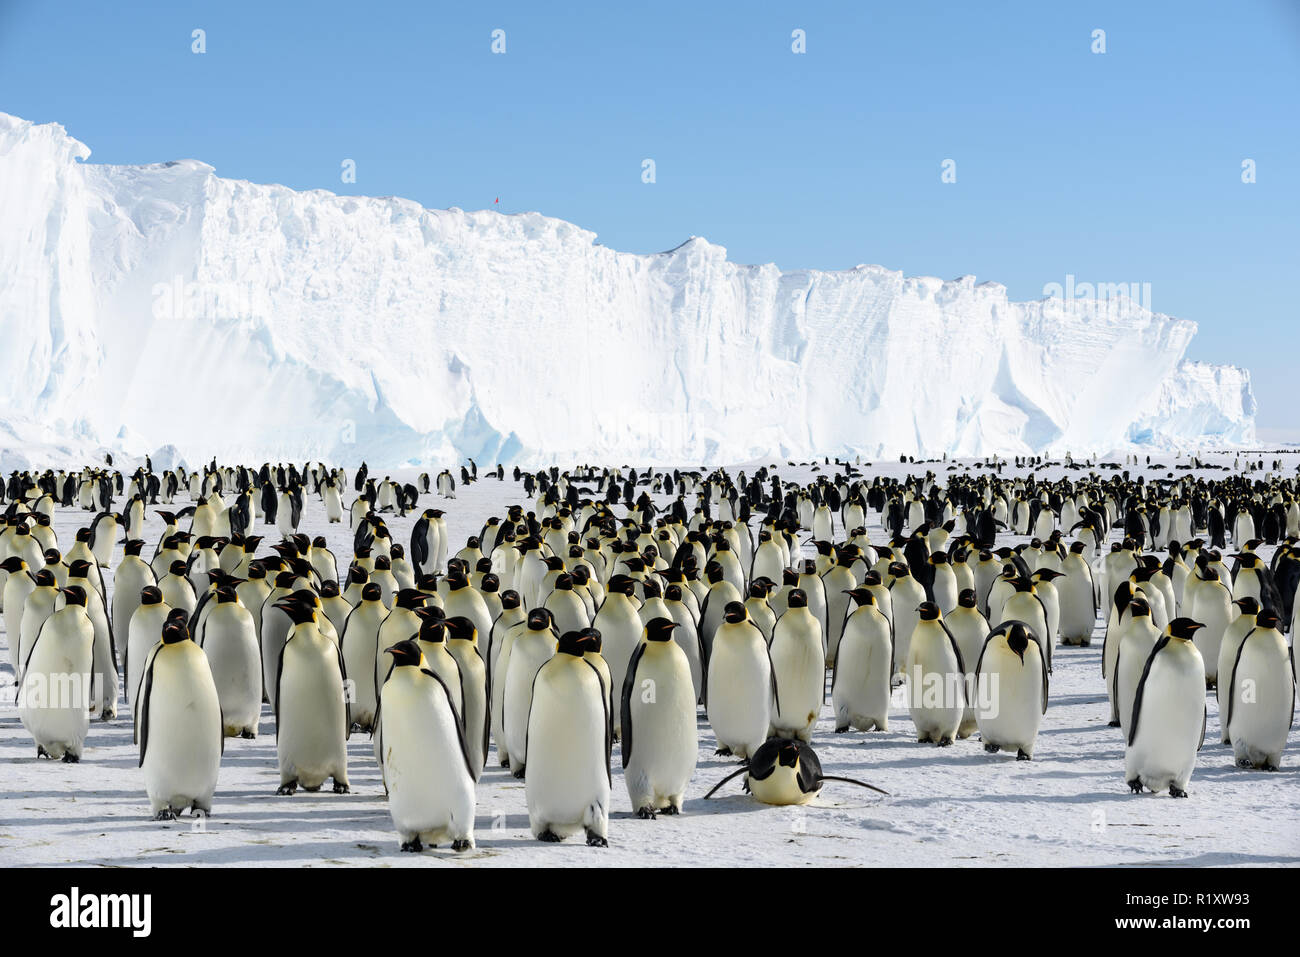 Colonie de manchots empereur sur la glace de mer juste à côté de la plate-forme de glace de plein fouet, l'Antarctique Banque D'Images